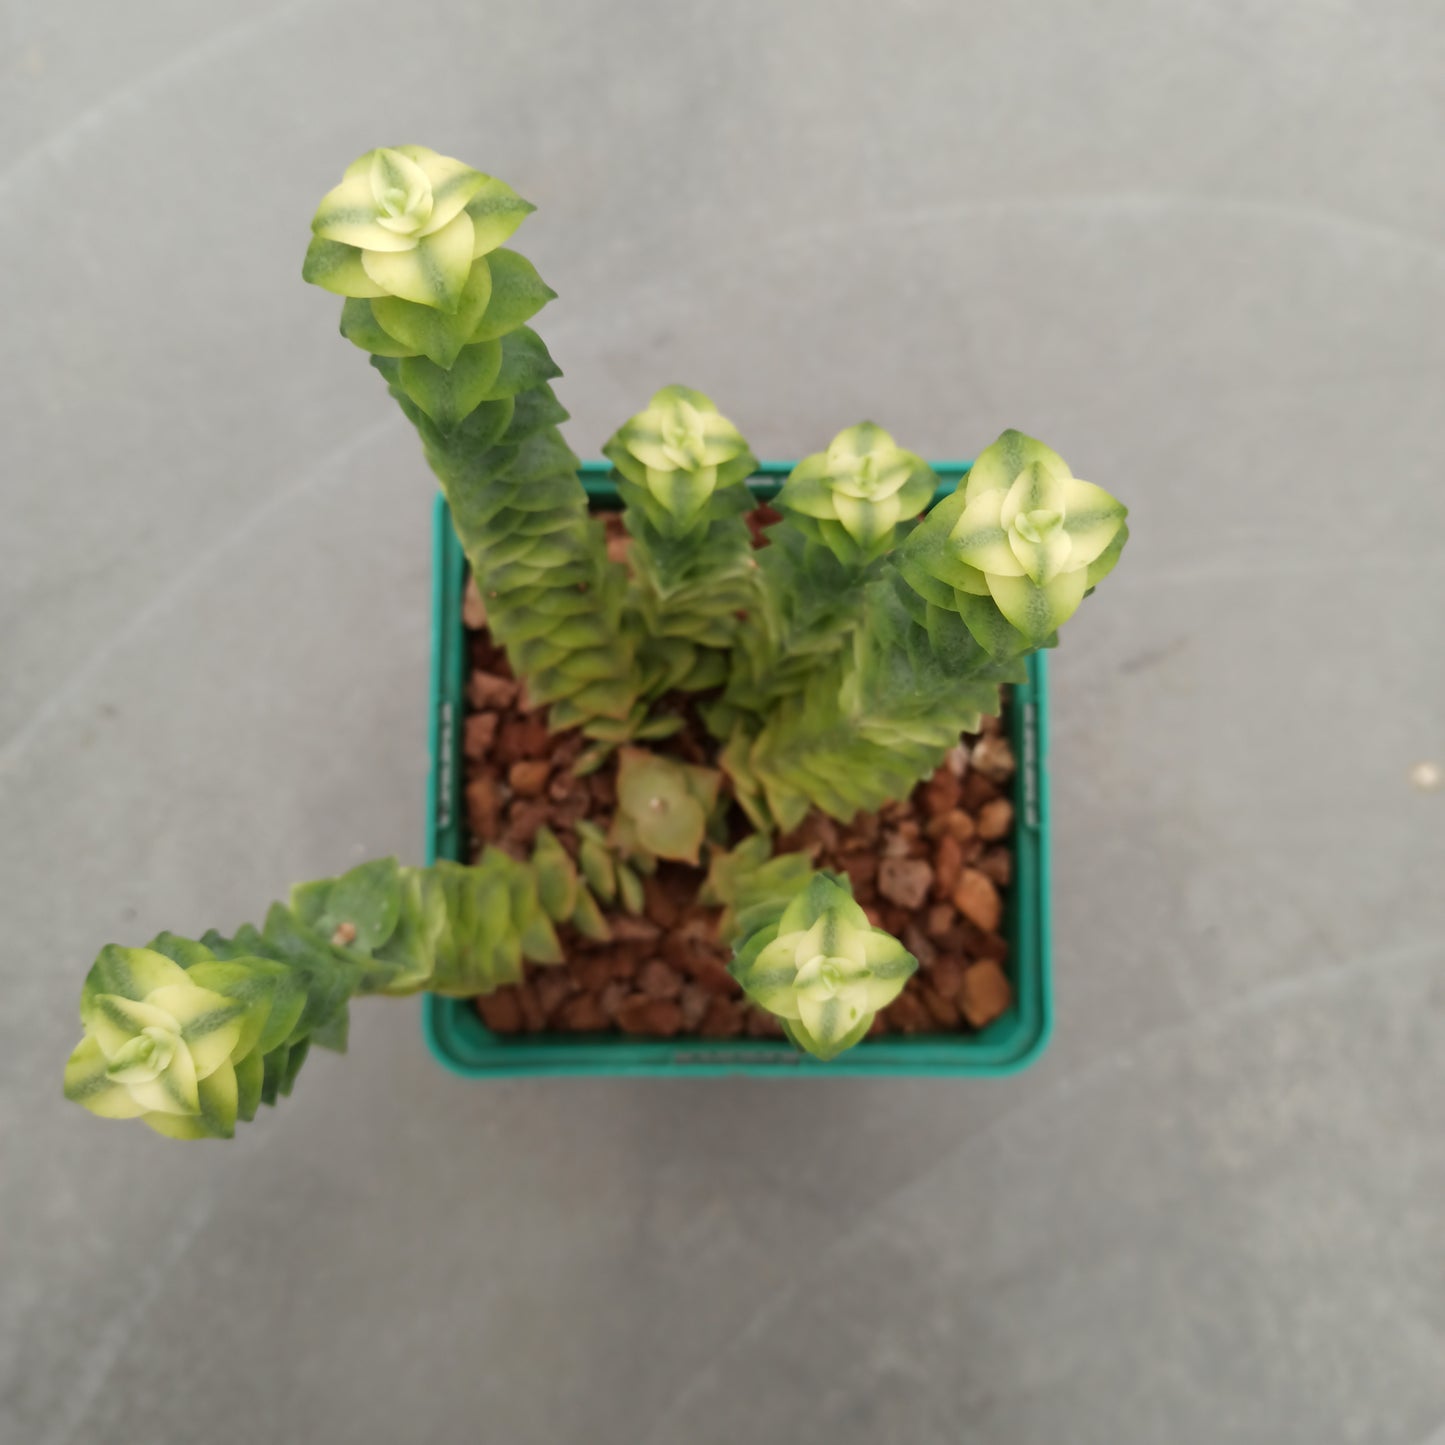 Crassula perforata variegata 'S' and 'M'